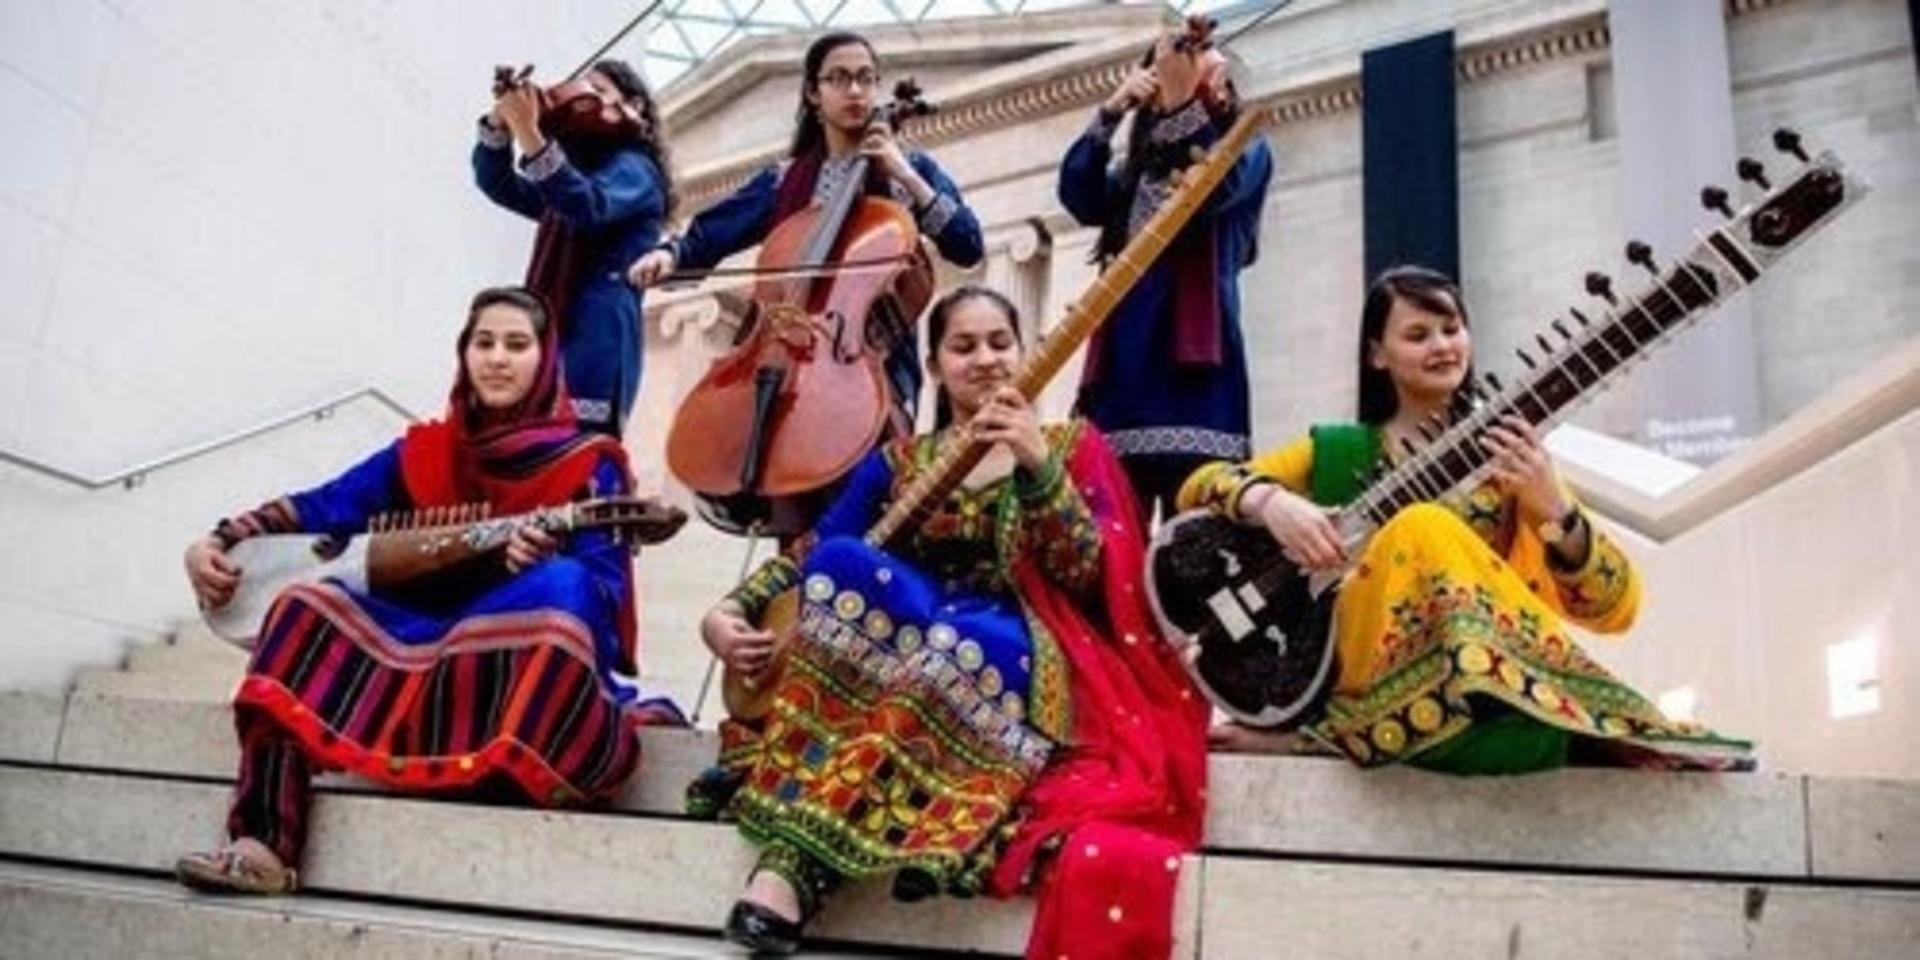 Zohra är en av de grupper som utbildats vid Afghanistans nationella musikinstitut. De består av unga kvinnliga musiker och har bland annat turnerat i Sverige.